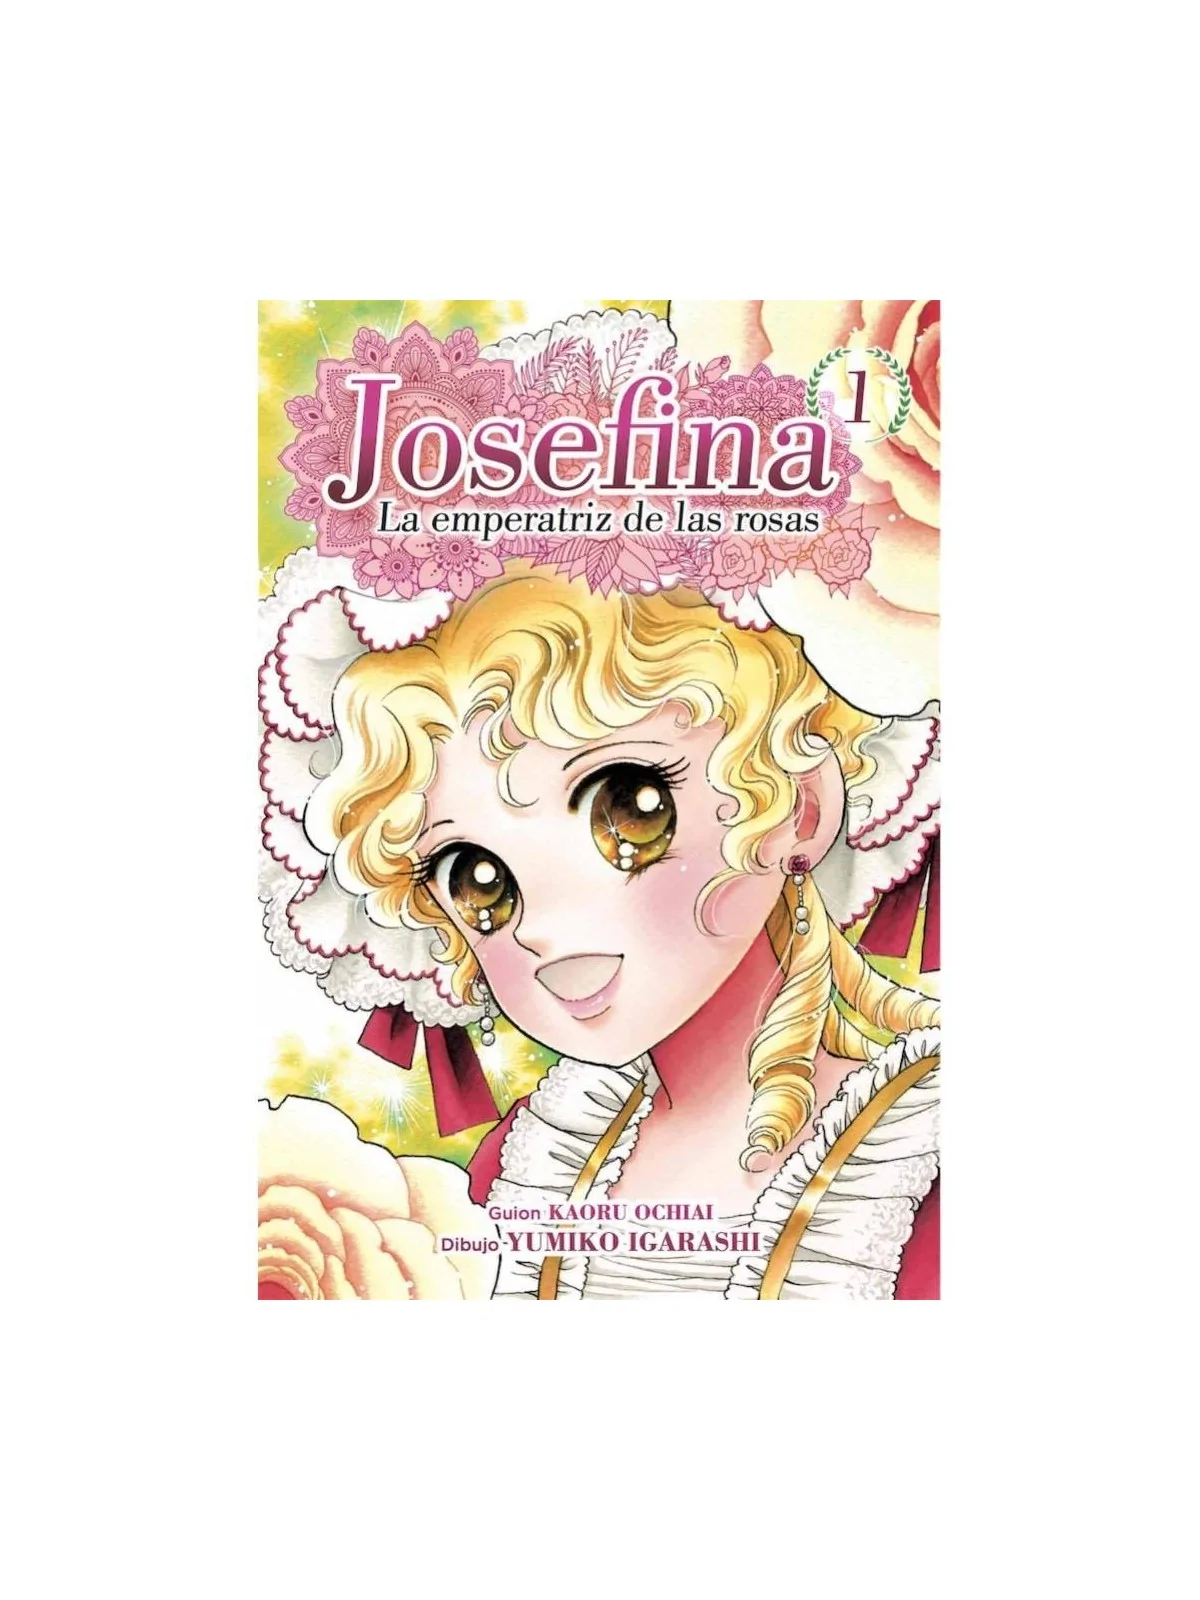 Comprar Josefina: La Emperatriz de las Rosas 01 barato al mejor precio